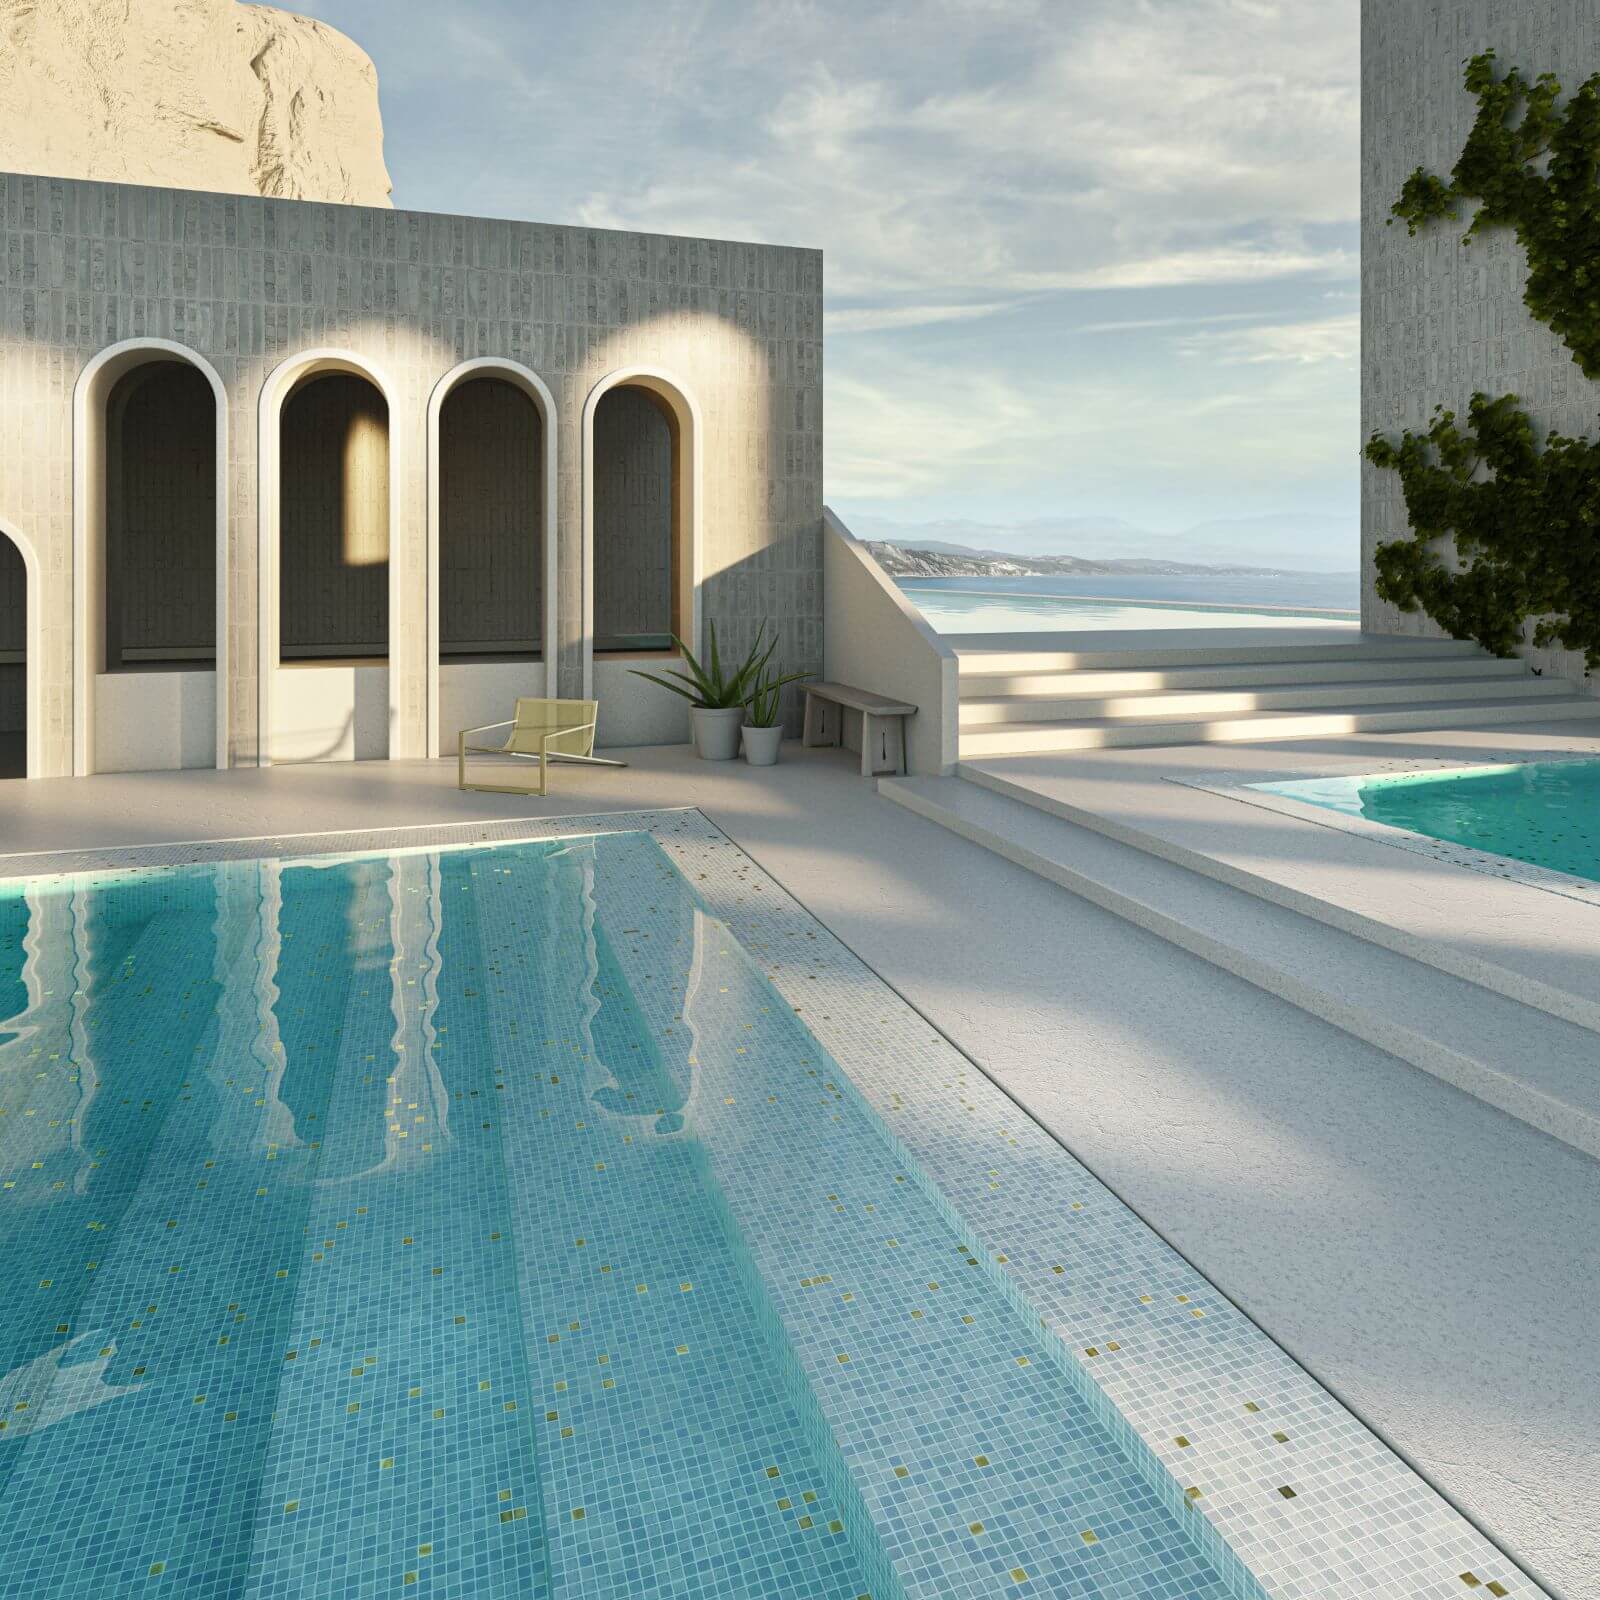 Obkladaný mozaikový bazén Ezarri MOSAIC WHITE